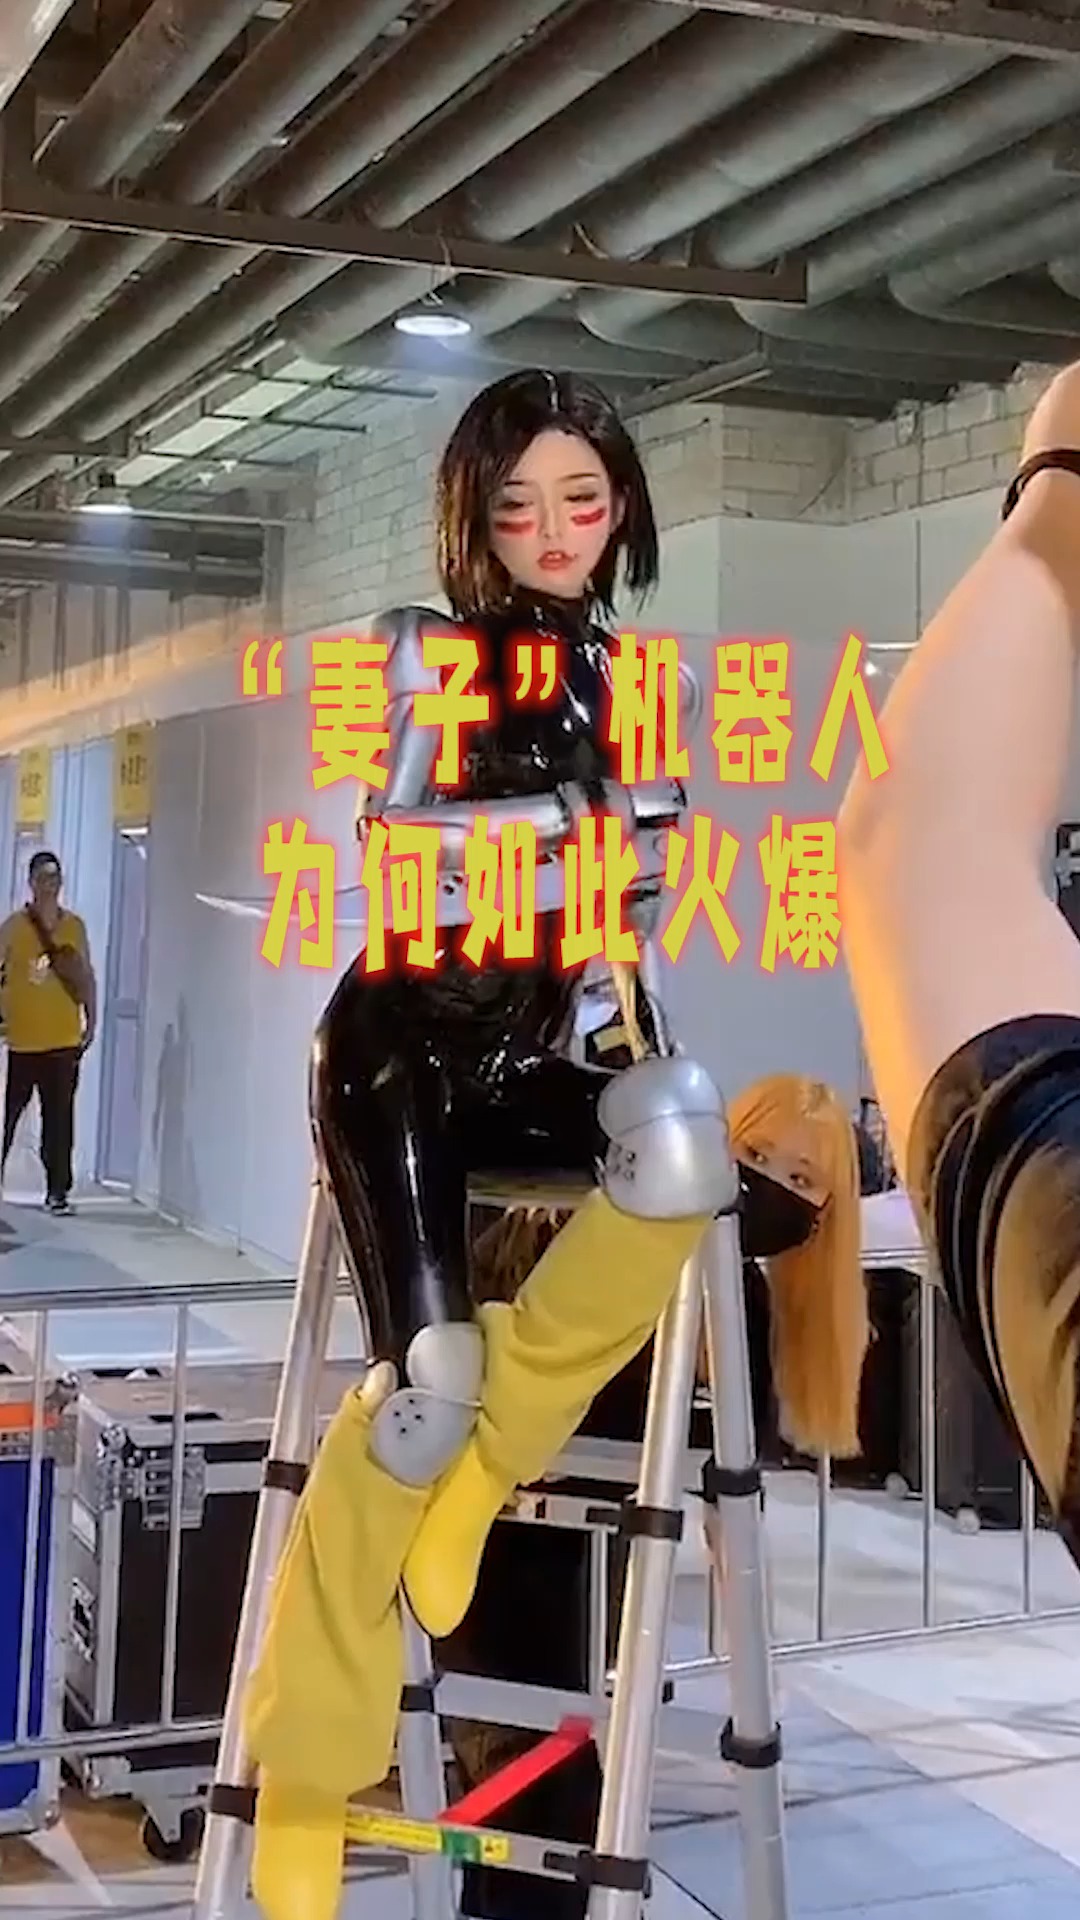 日本美女机器人为何如此火爆让人大开眼界